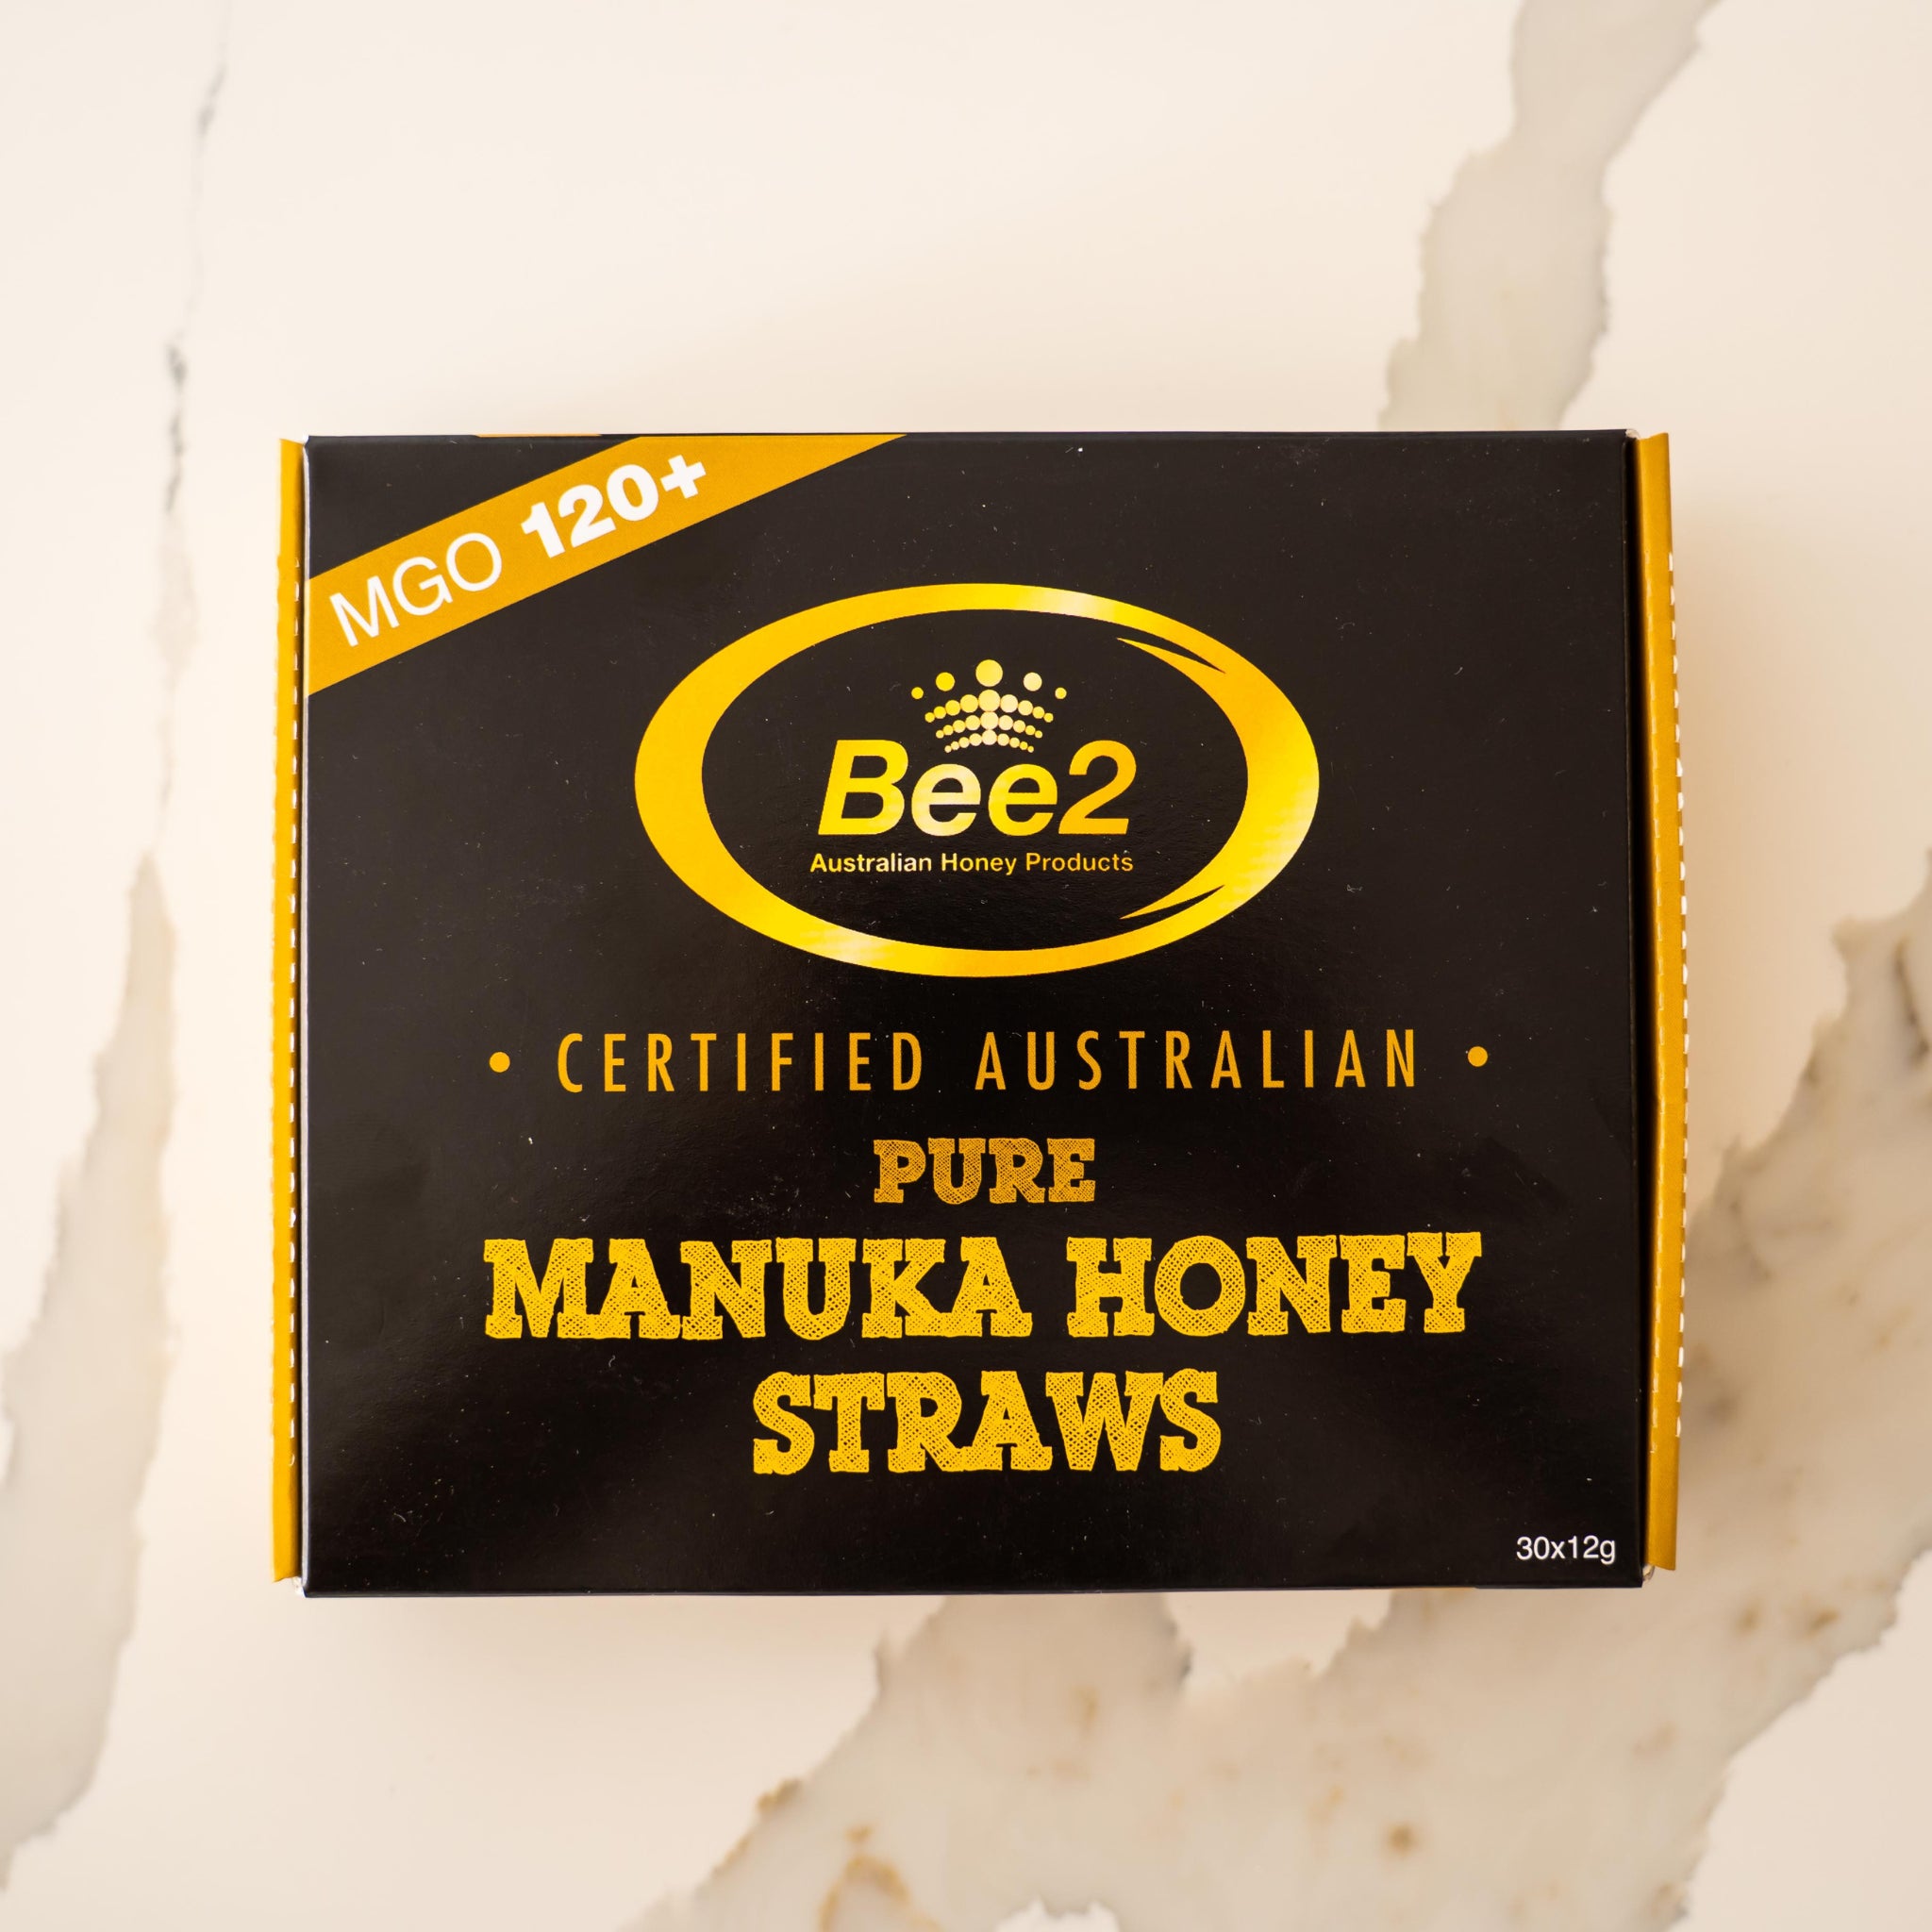 Bee2 Manuka Honey Straws MGO 120+